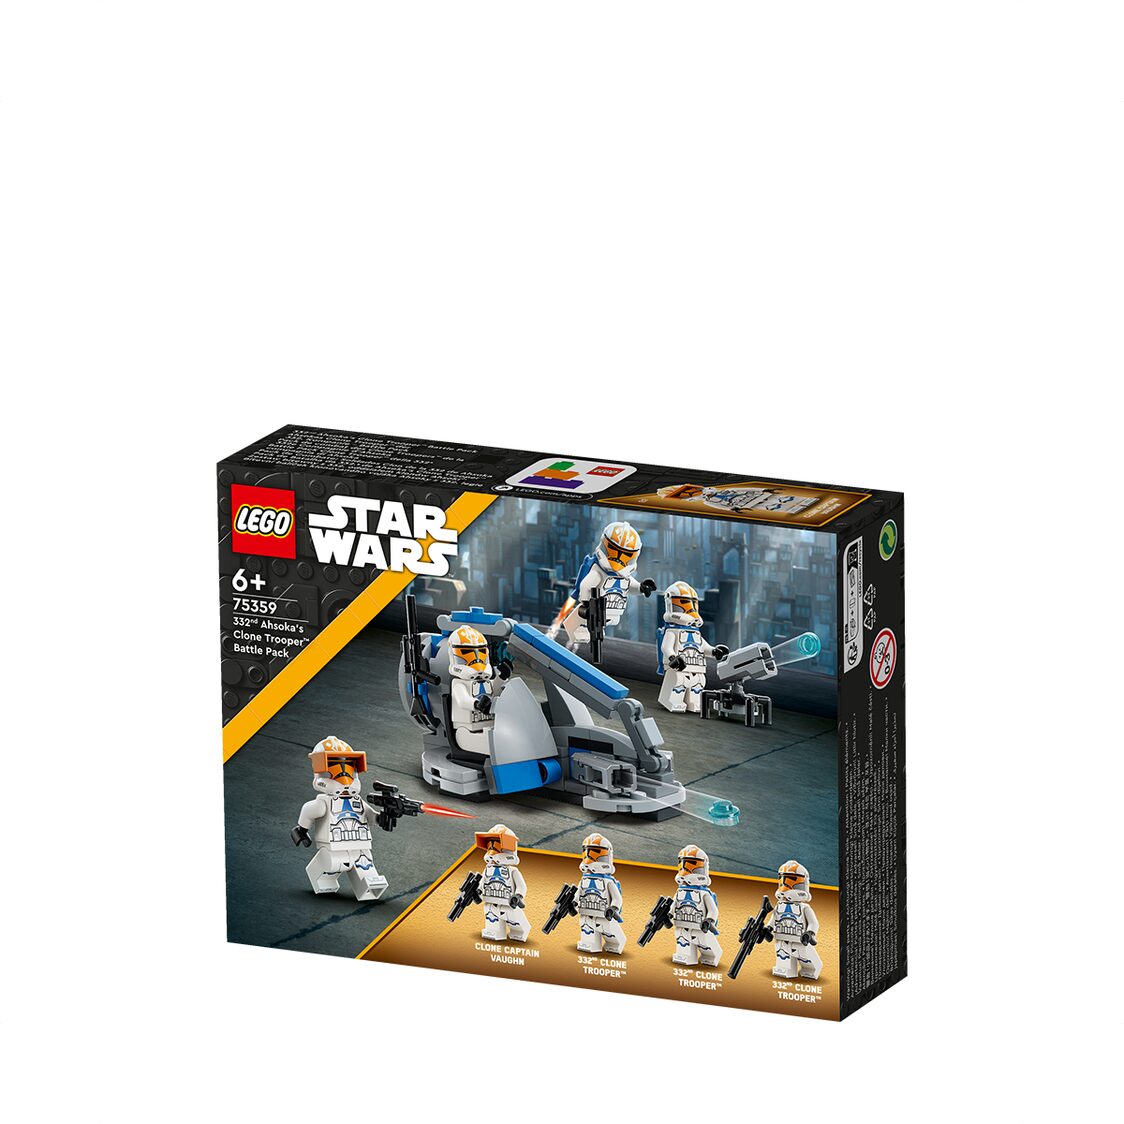 332nd Ahsoka's Clone Trooper™ Battle Pack 75359, Star Wars™